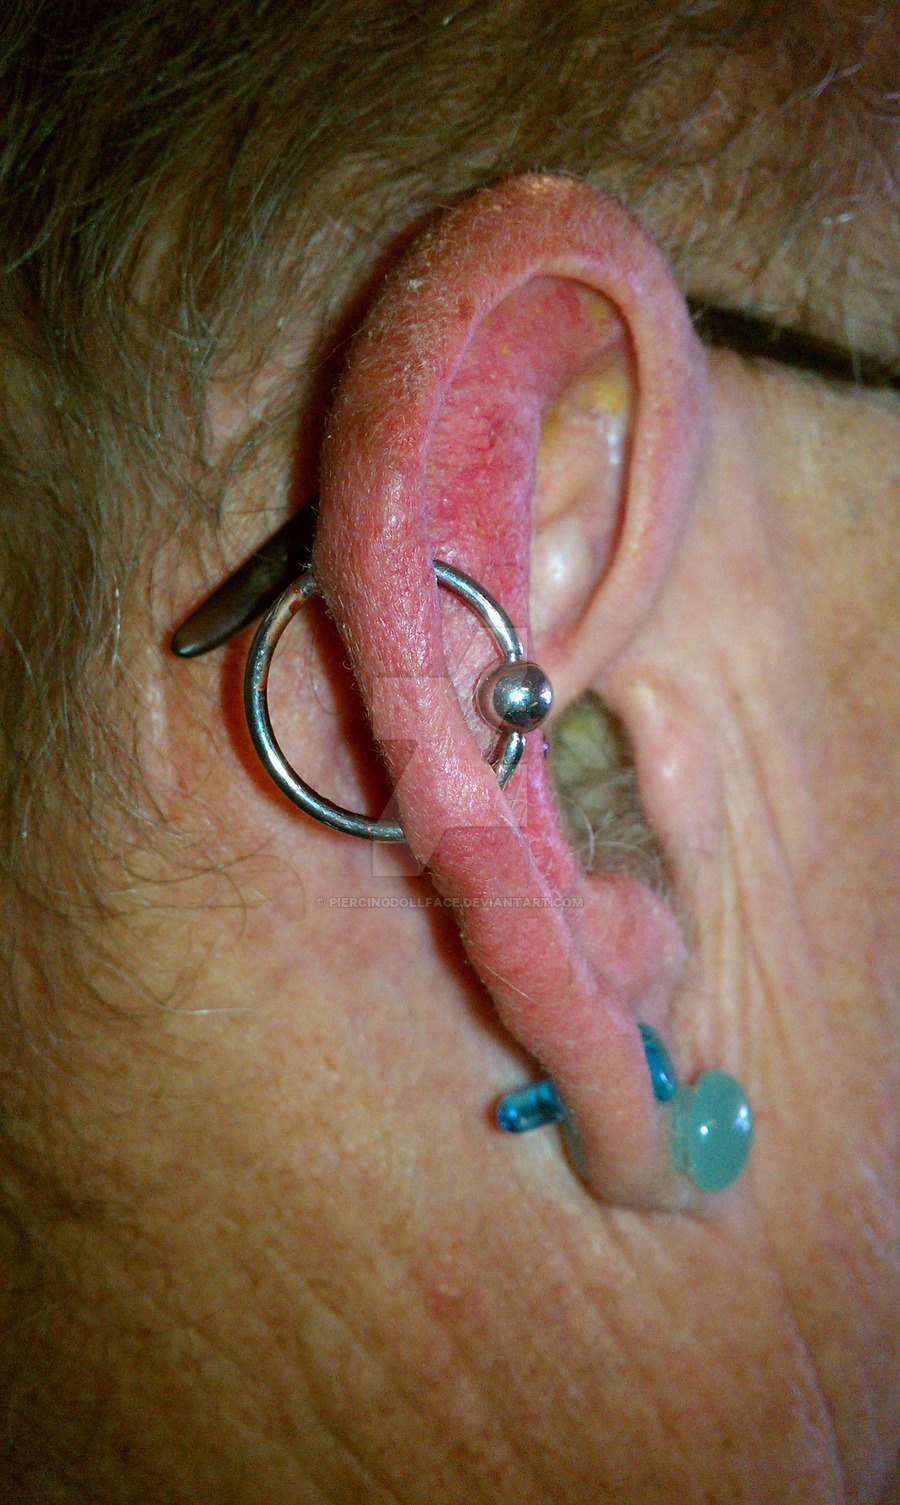 Orbital Piercing On Right Ear by piercingdollface